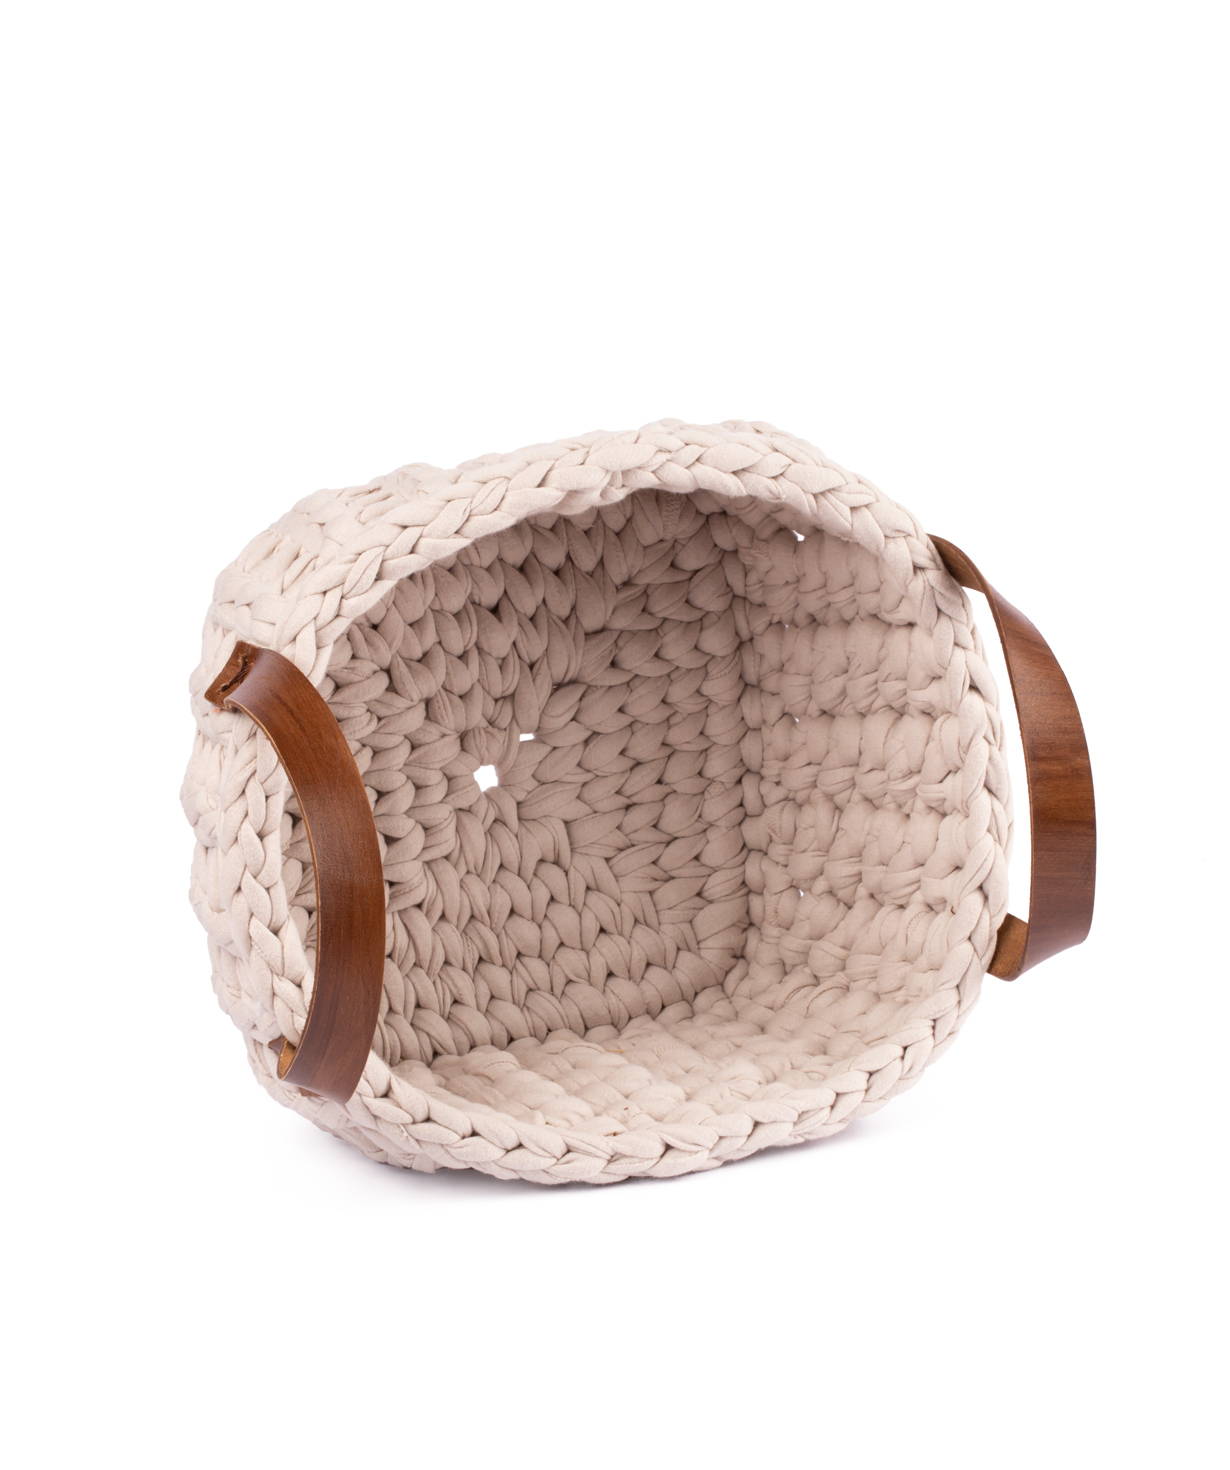 Basket `Ro Handmade` handmade, cotton №2